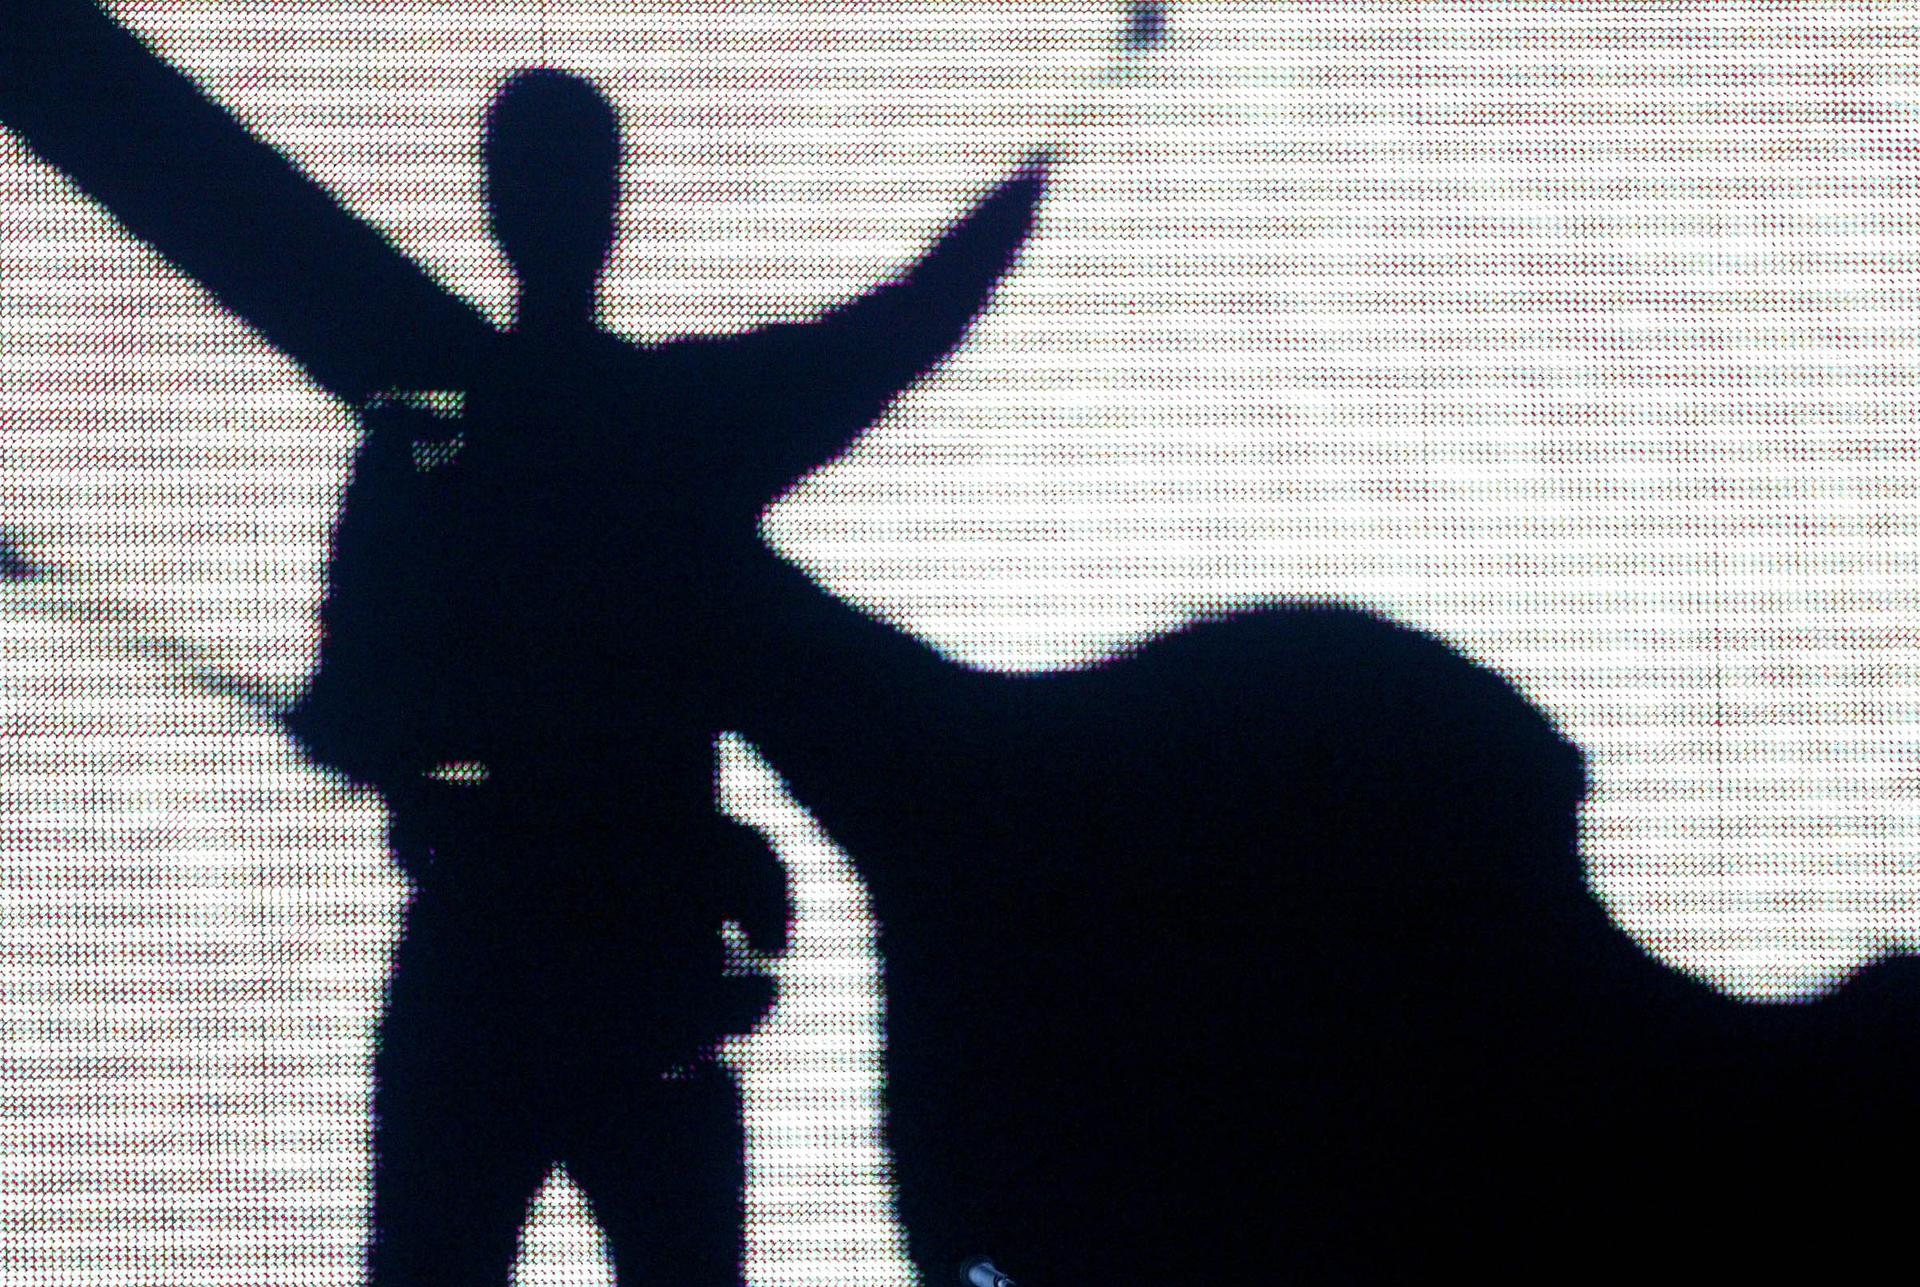 A musician in silhouette